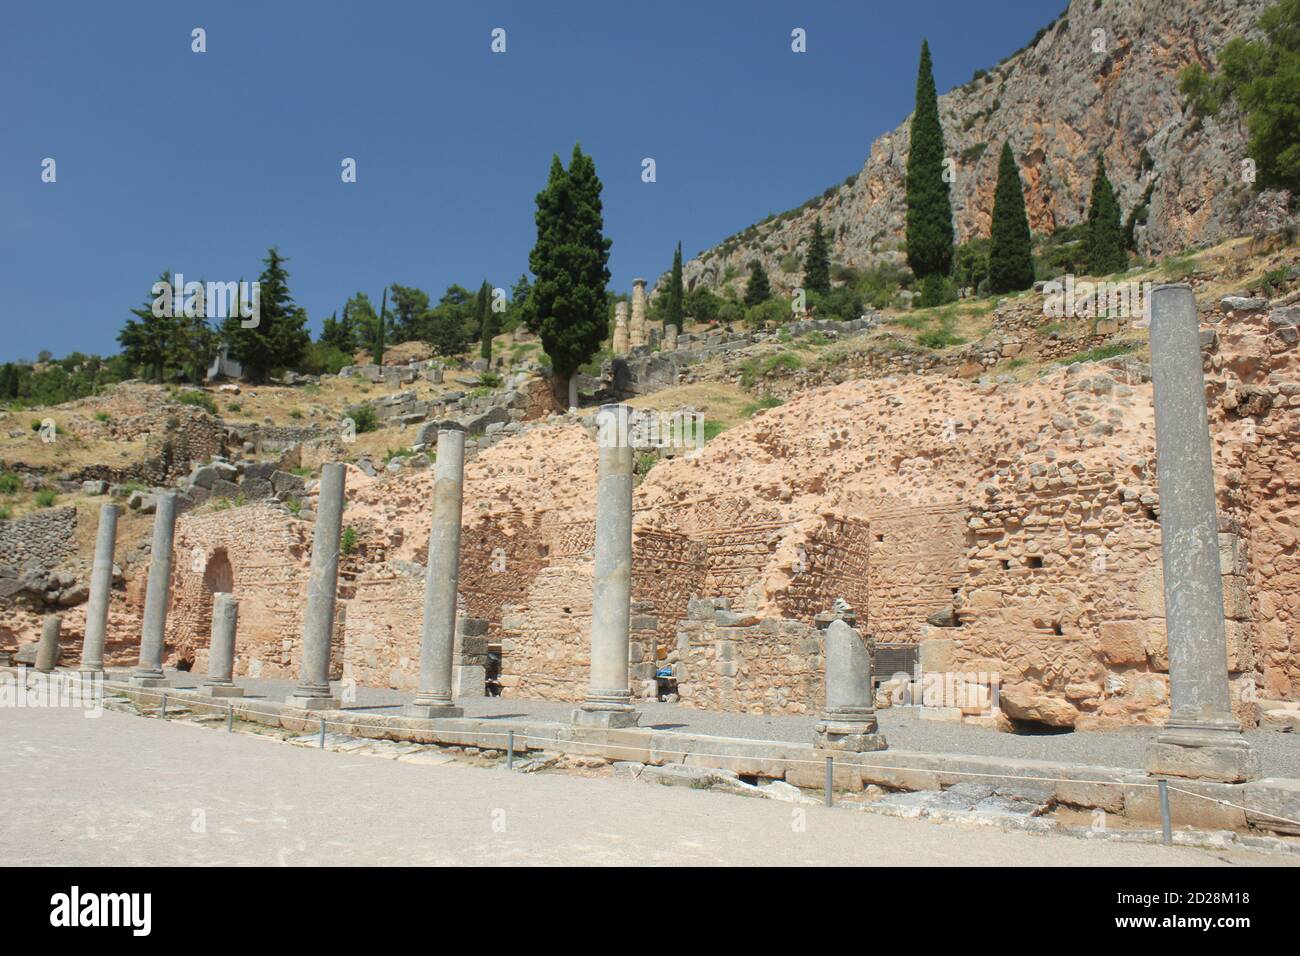 Vue sur le site archéologique de Delphes en Grèce Banque D'Images